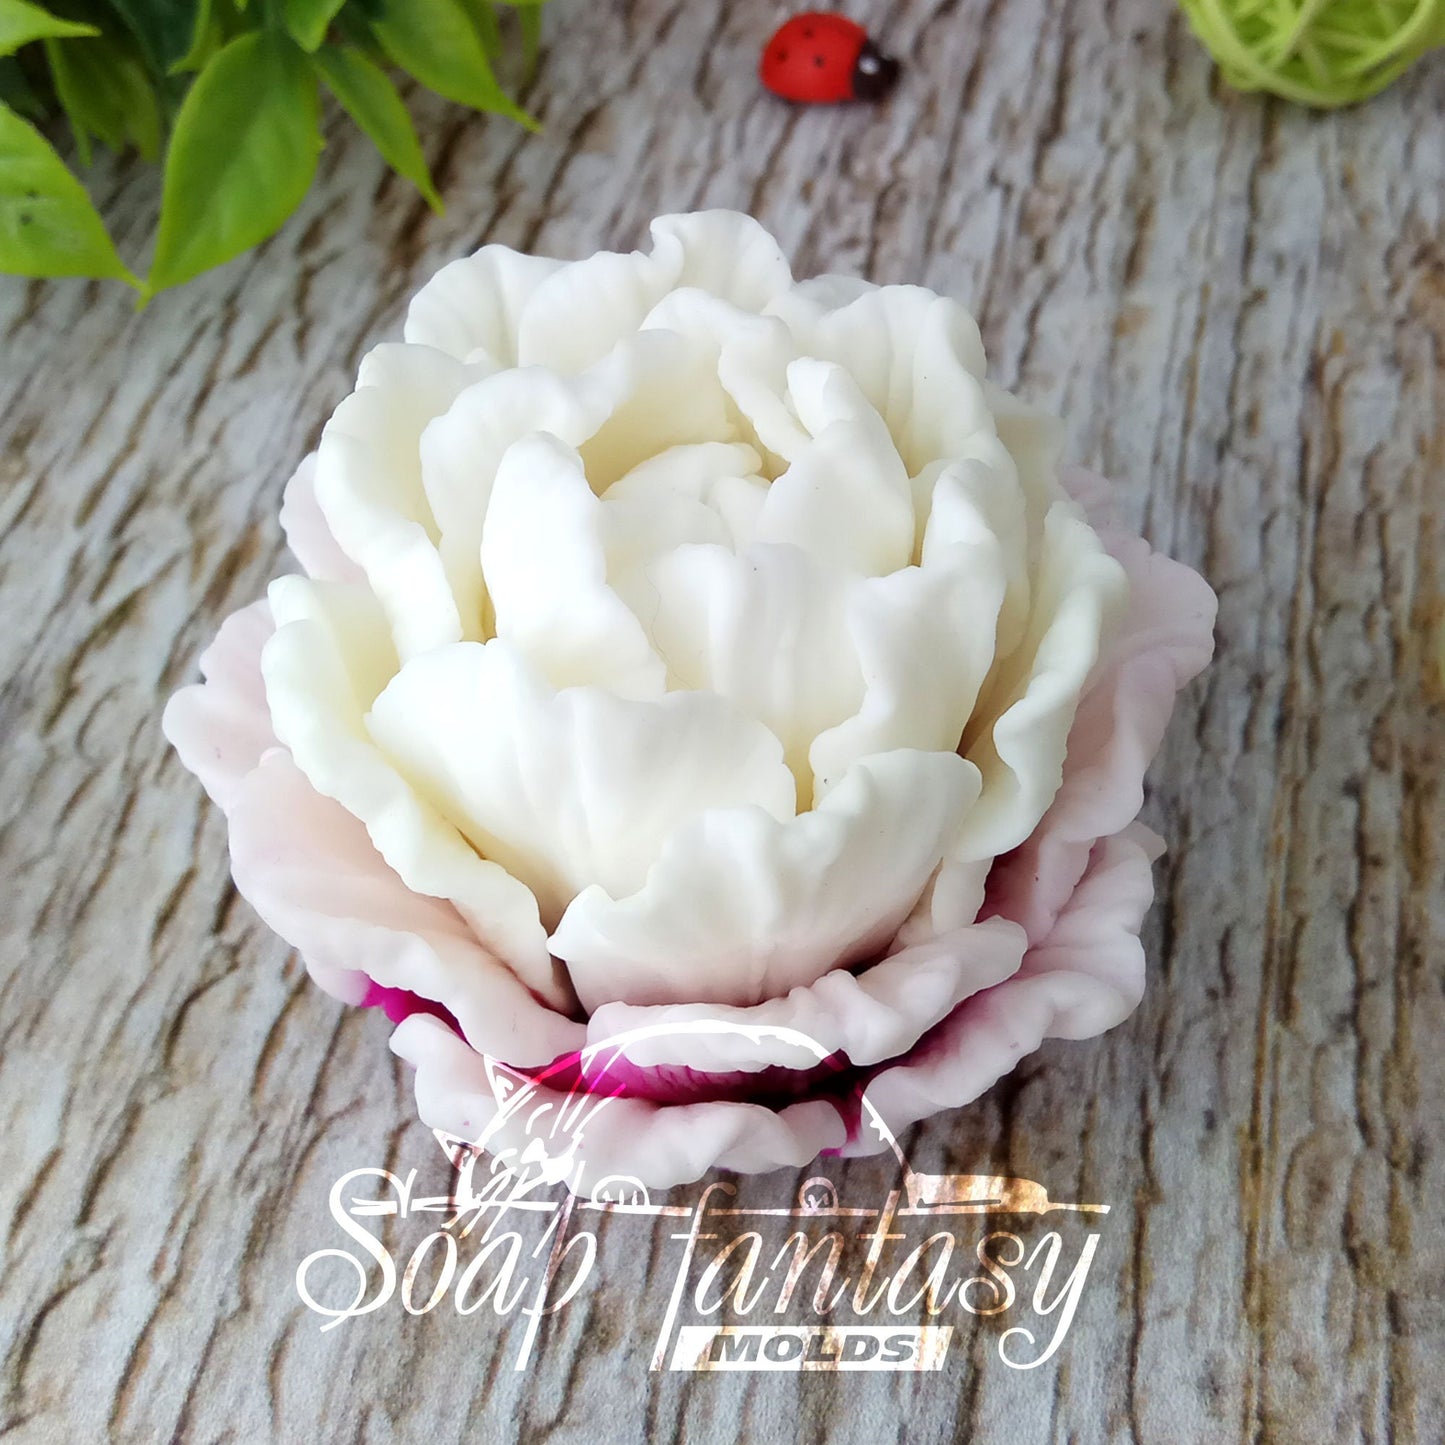 Tulip "Ice Cream" silicone mold for soap making